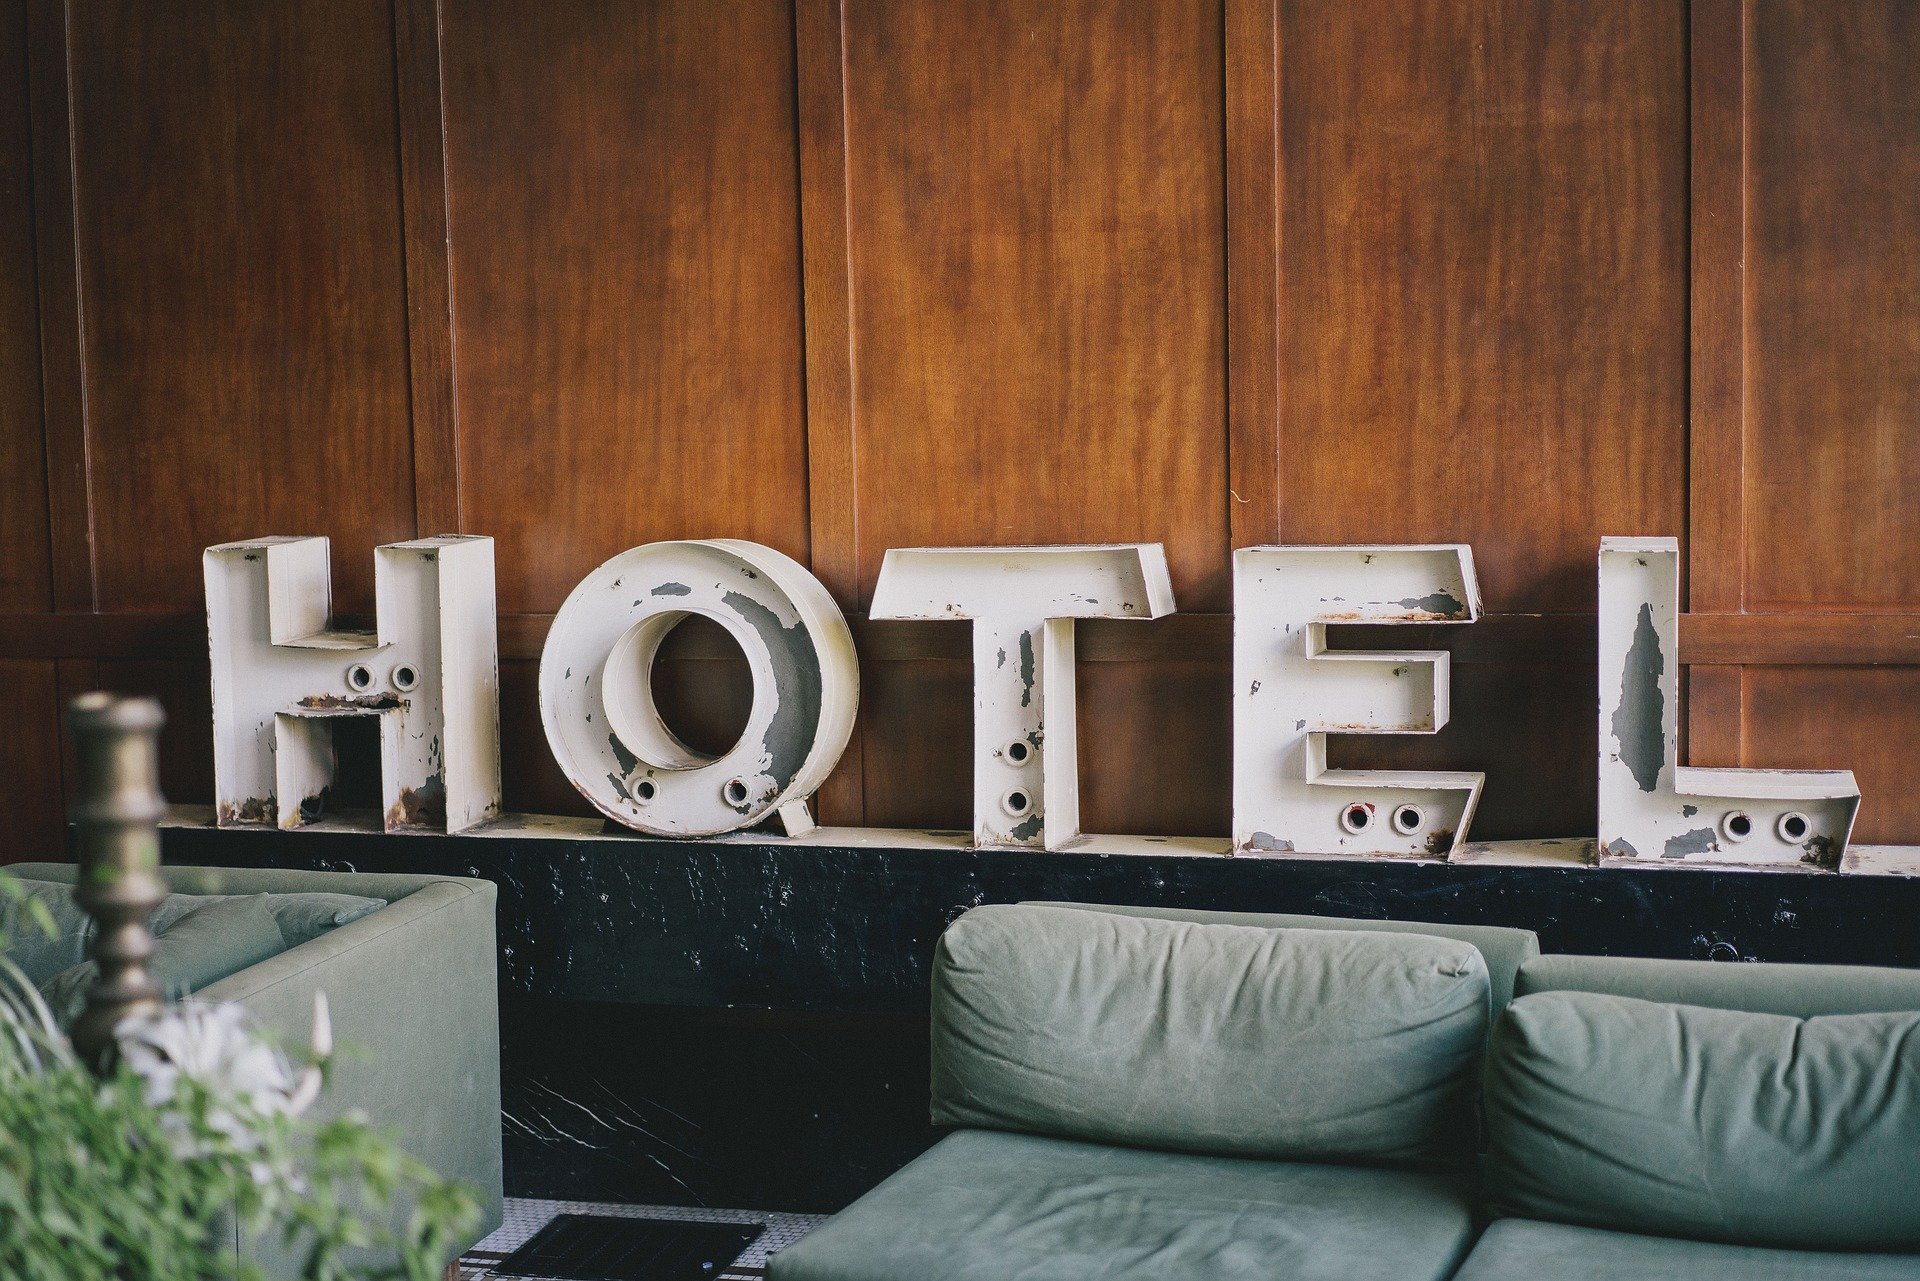 marriott-to-lose-100-hotels-to-sonesta-in-days